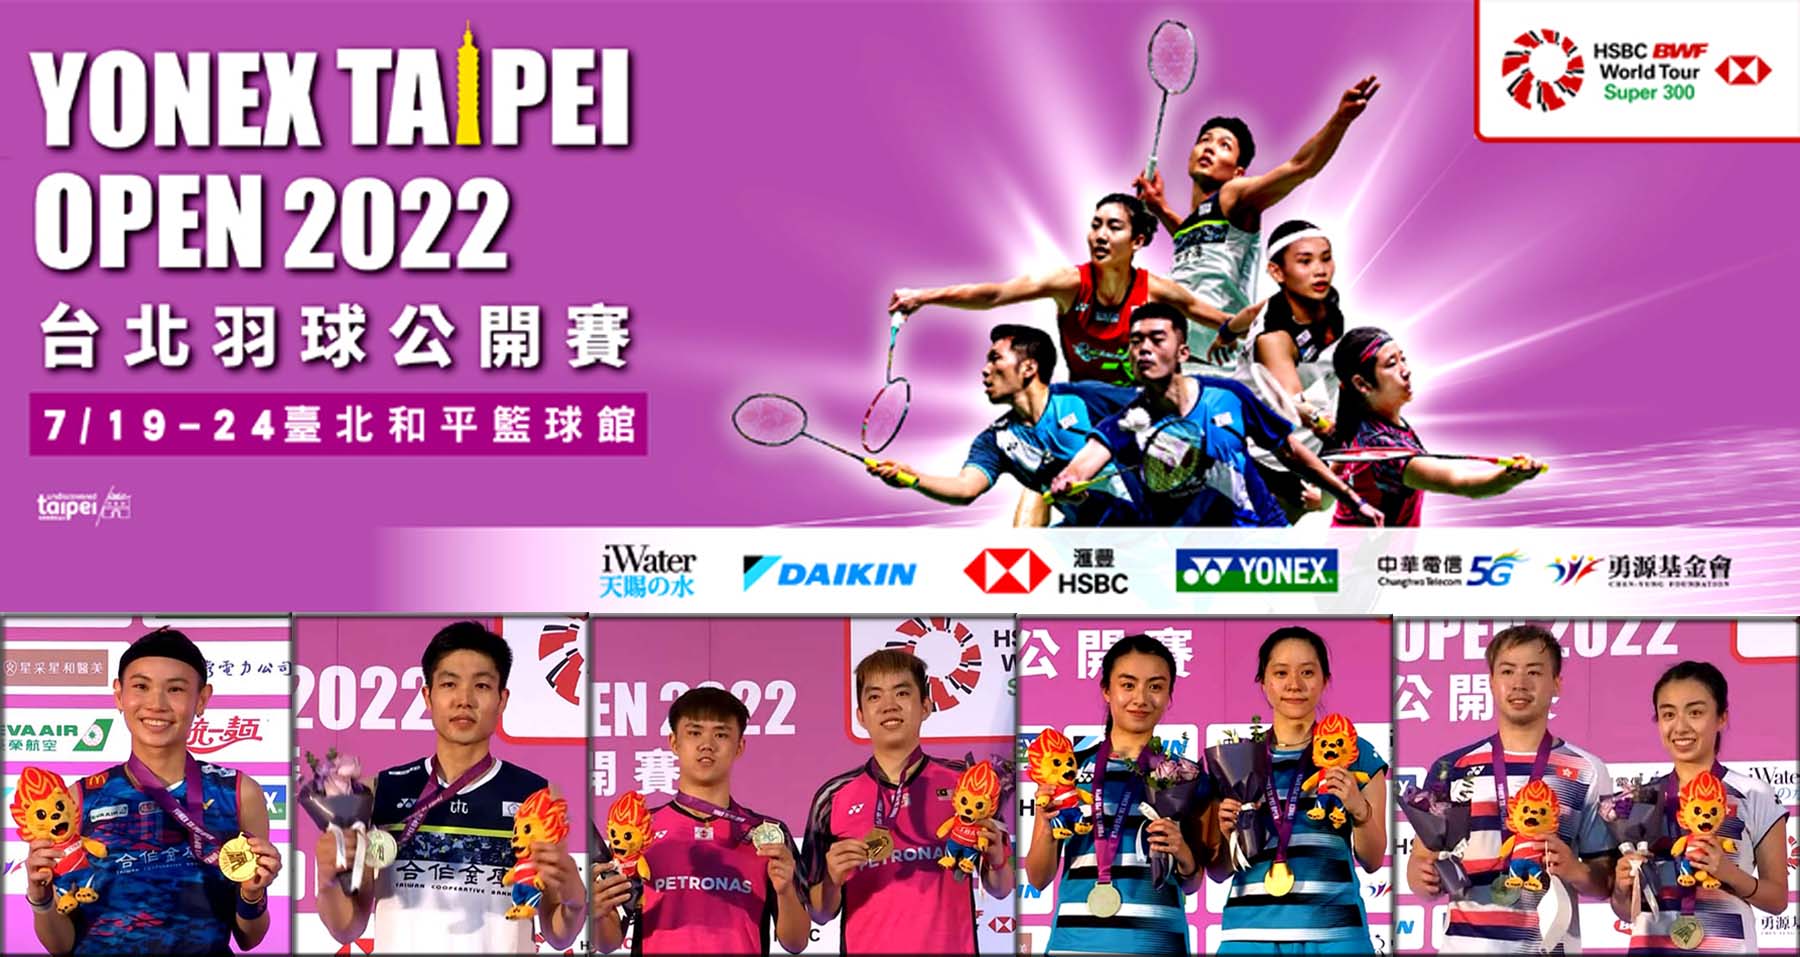 คลิปแบดมินตัน YONEX Taipei Open 2022 รอบ 32 - รอบชิงชนะเลิศ 19 - 24 ก.ค